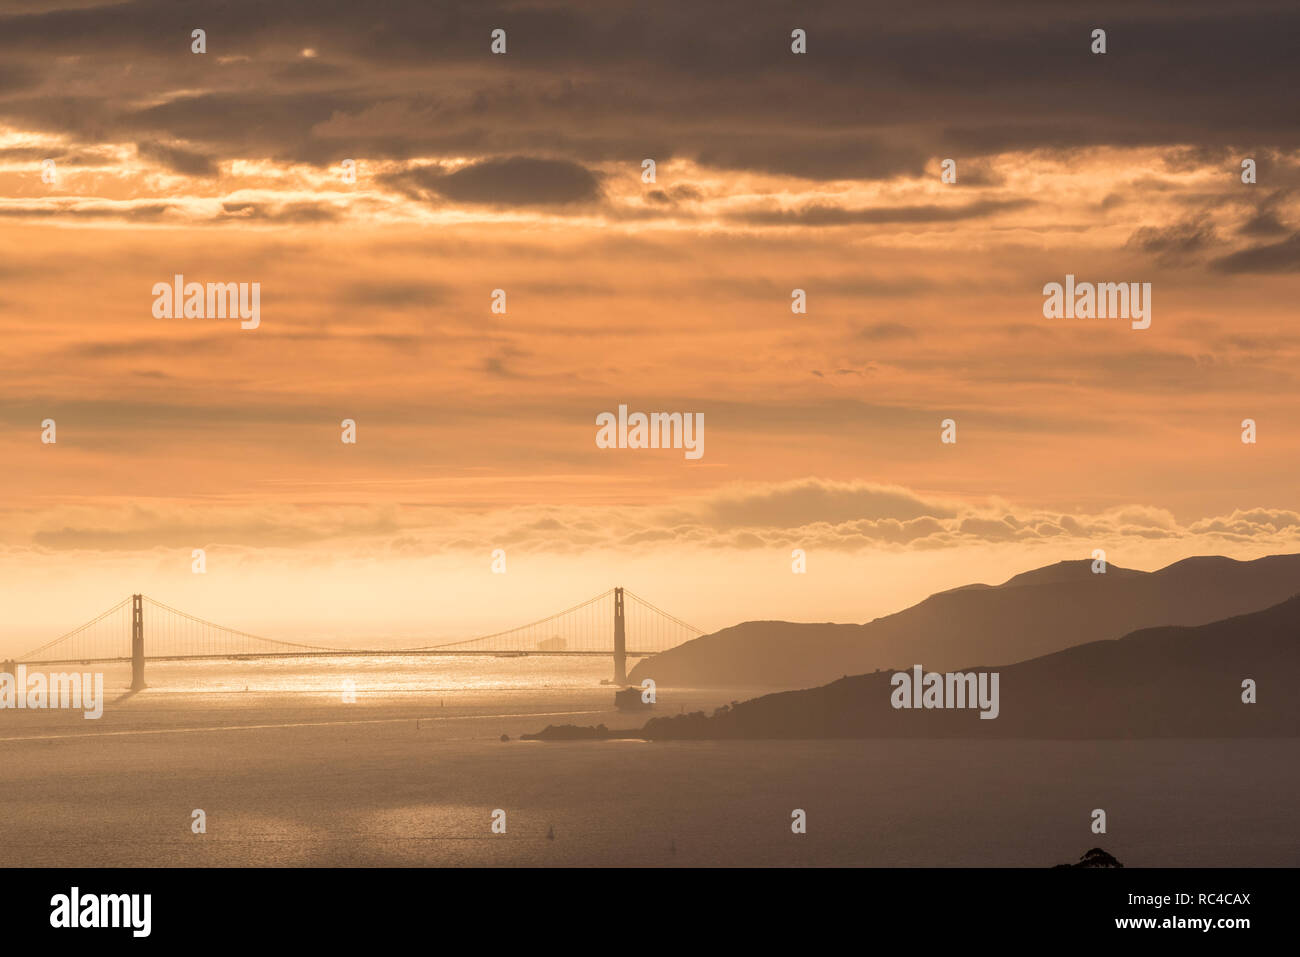 El puente Golden Gate en San Francisco, como visto desde lejos en el Berkeley Hills durante un hermoso atardecer cuando el cielo era de color naranja. Foto de stock